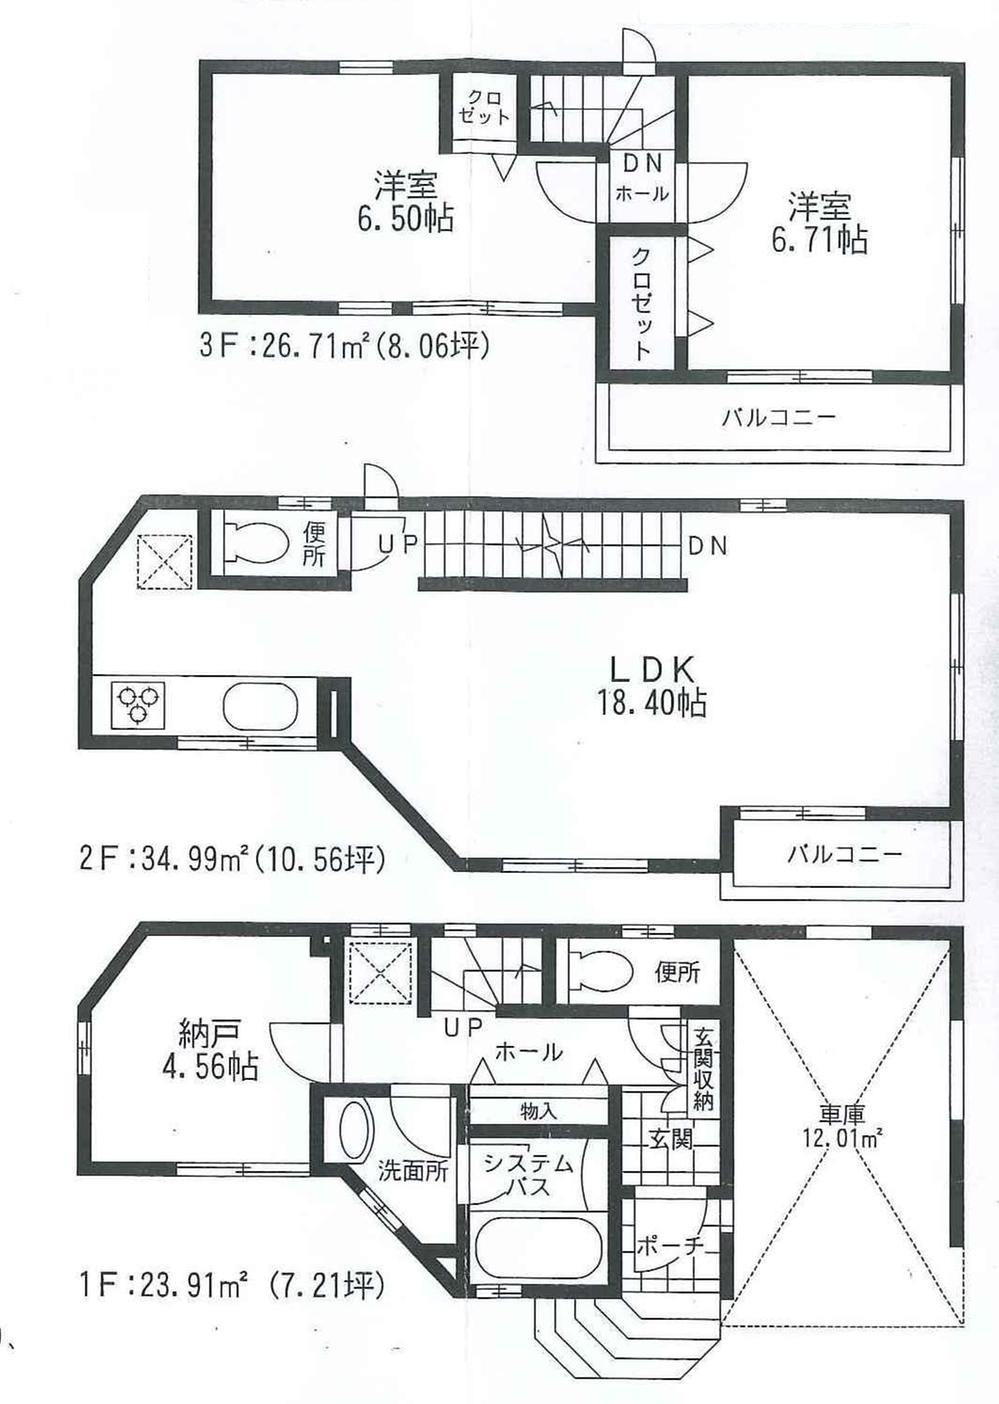 Floor plan. 34,800,000 yen, 2LDK + S (storeroom), Land area 62.96 sq m , Building area 97.62 sq m